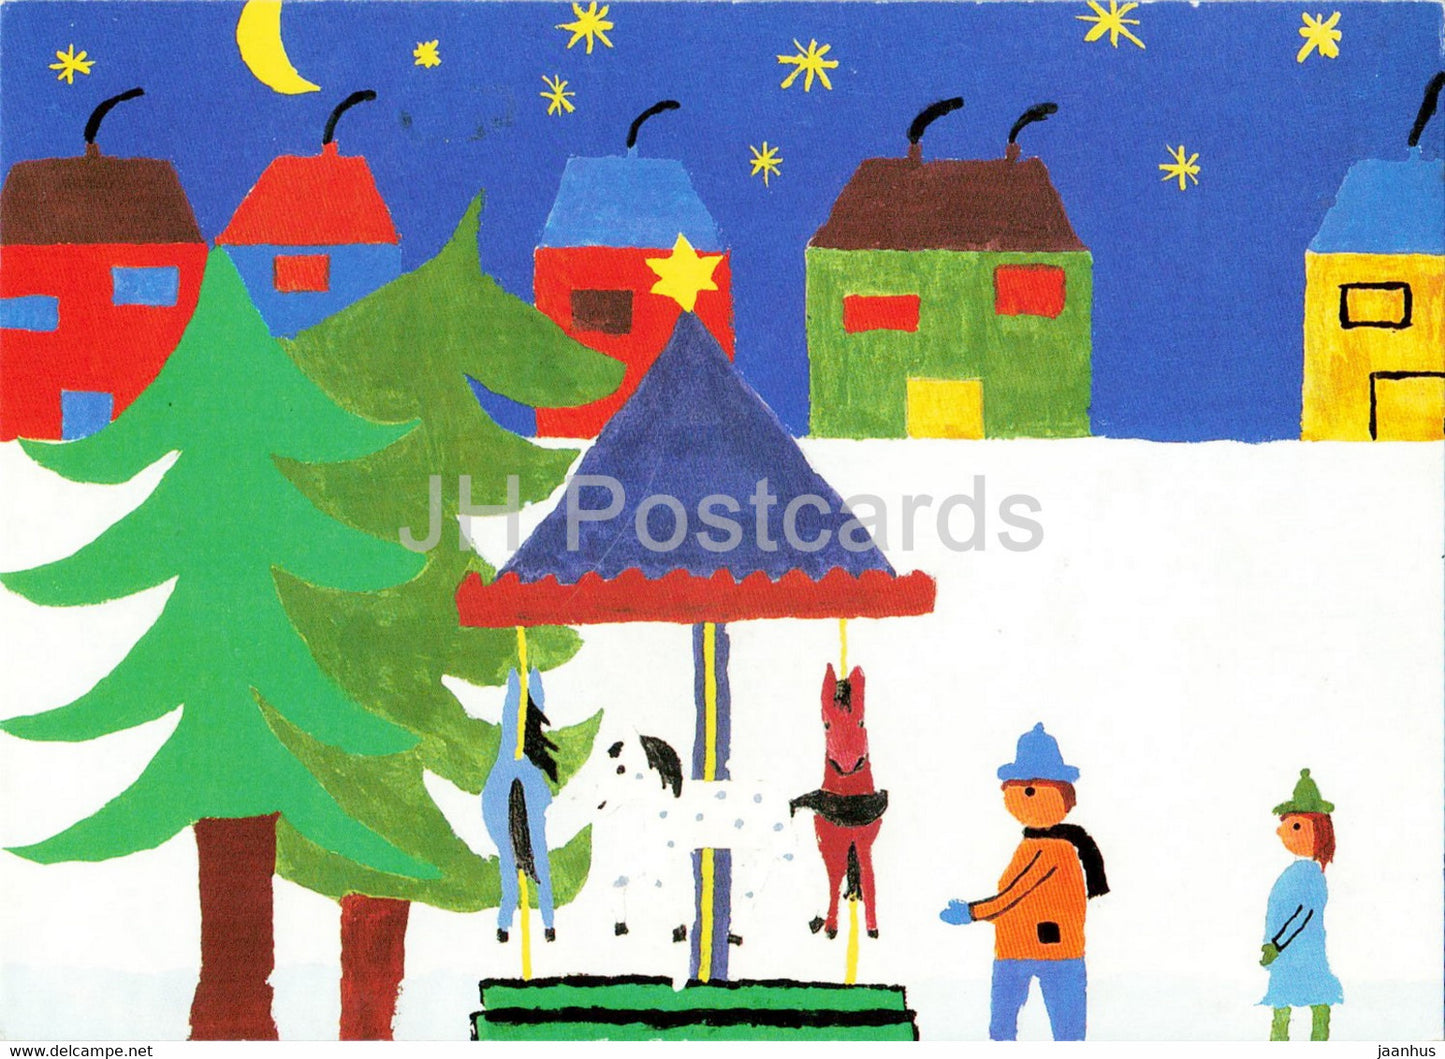 painting by Karin 16 Jahre - Winter - German art - Germany - unused - JH Postcards